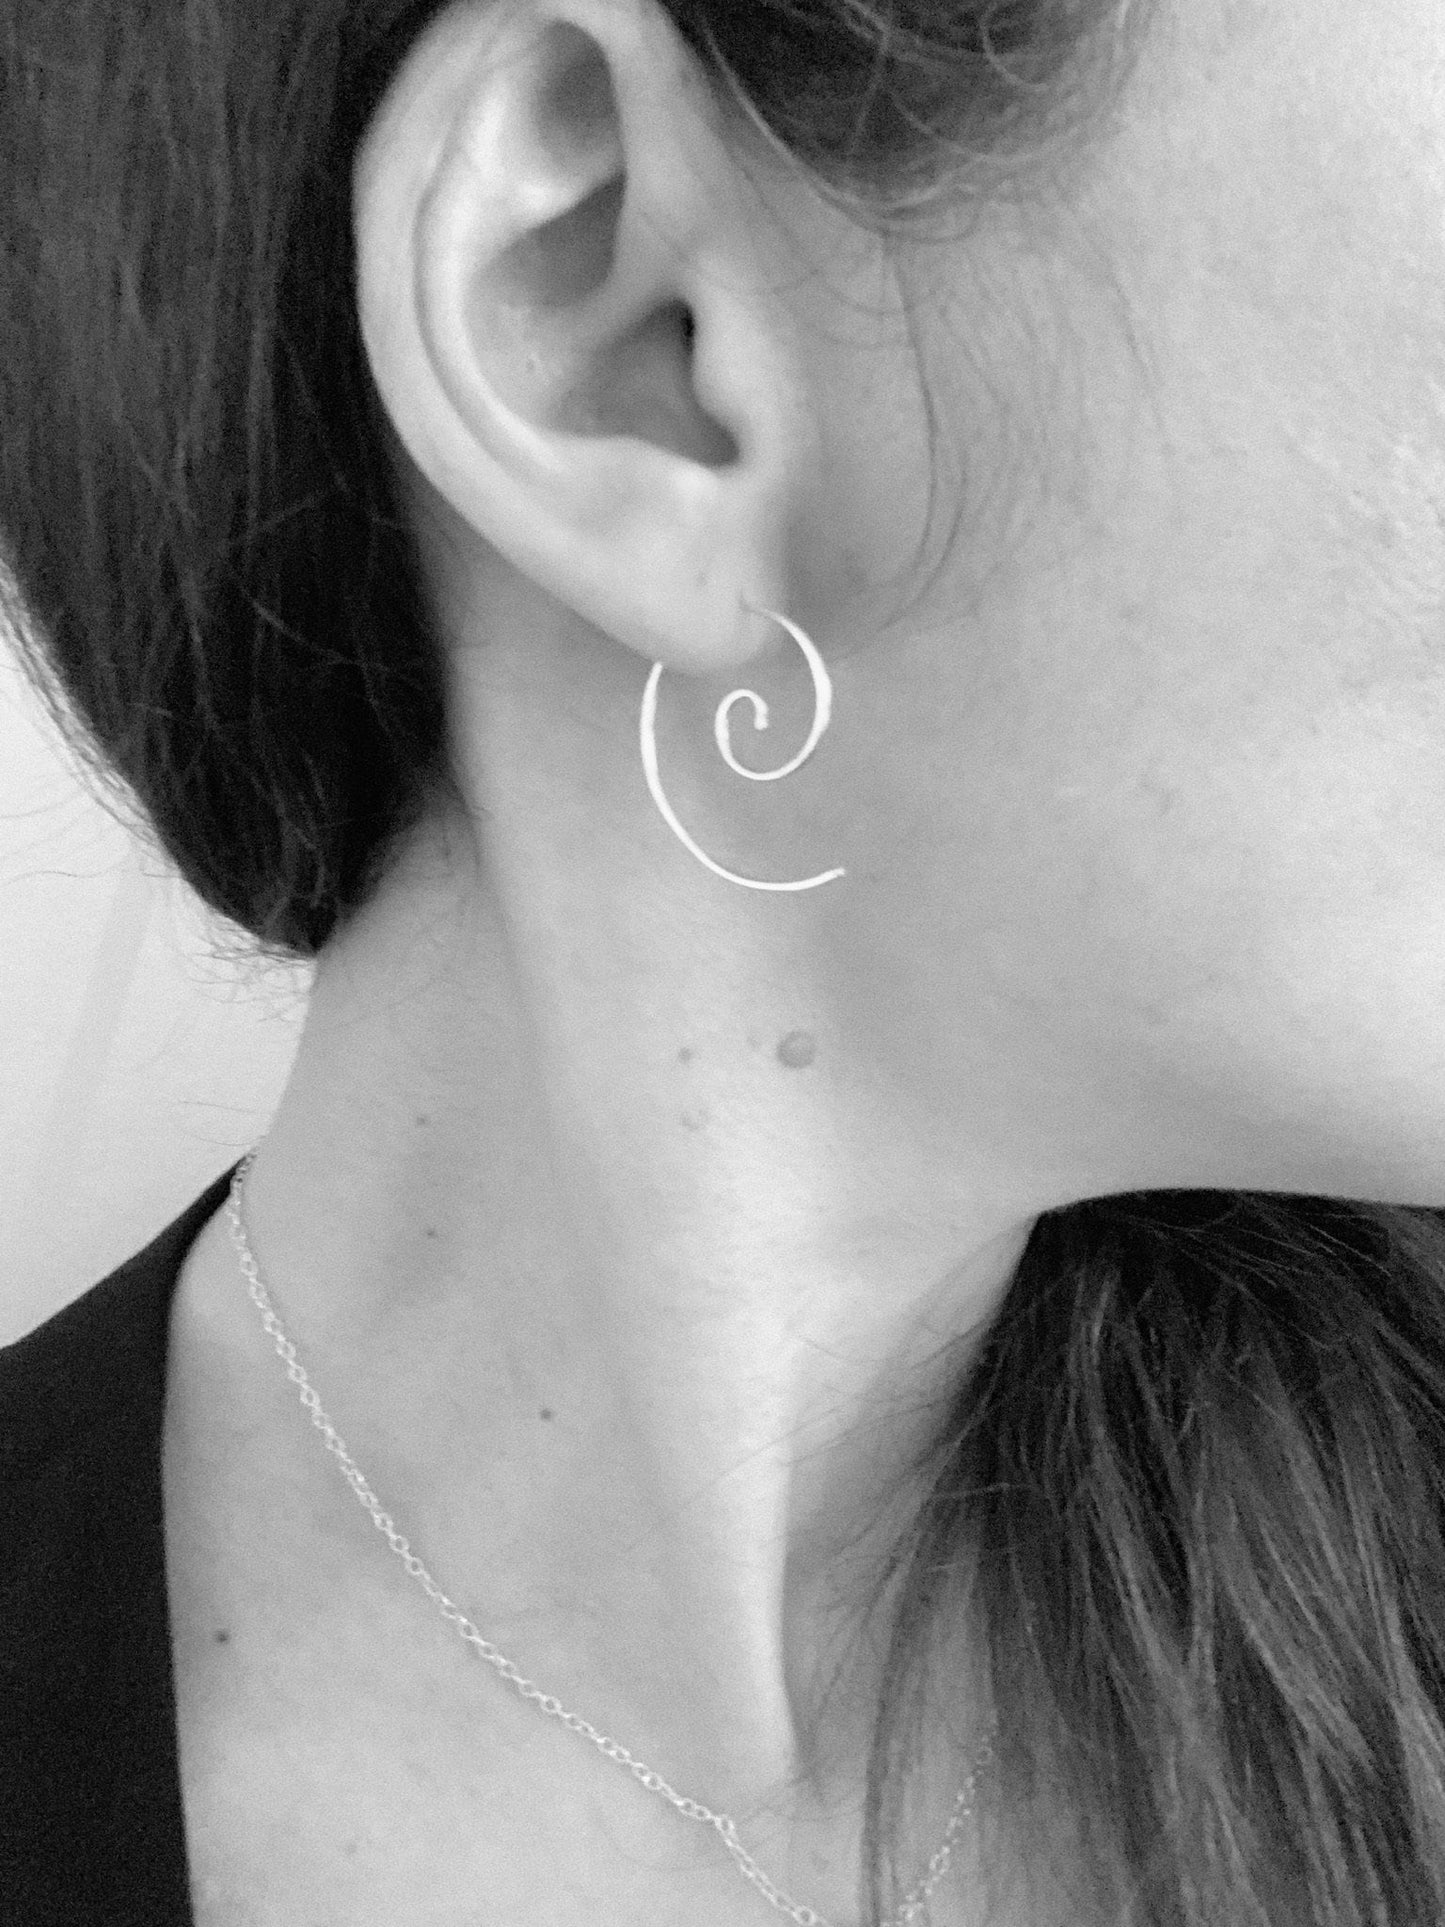 Silver spiral threader earrings, spiral hoop earrings